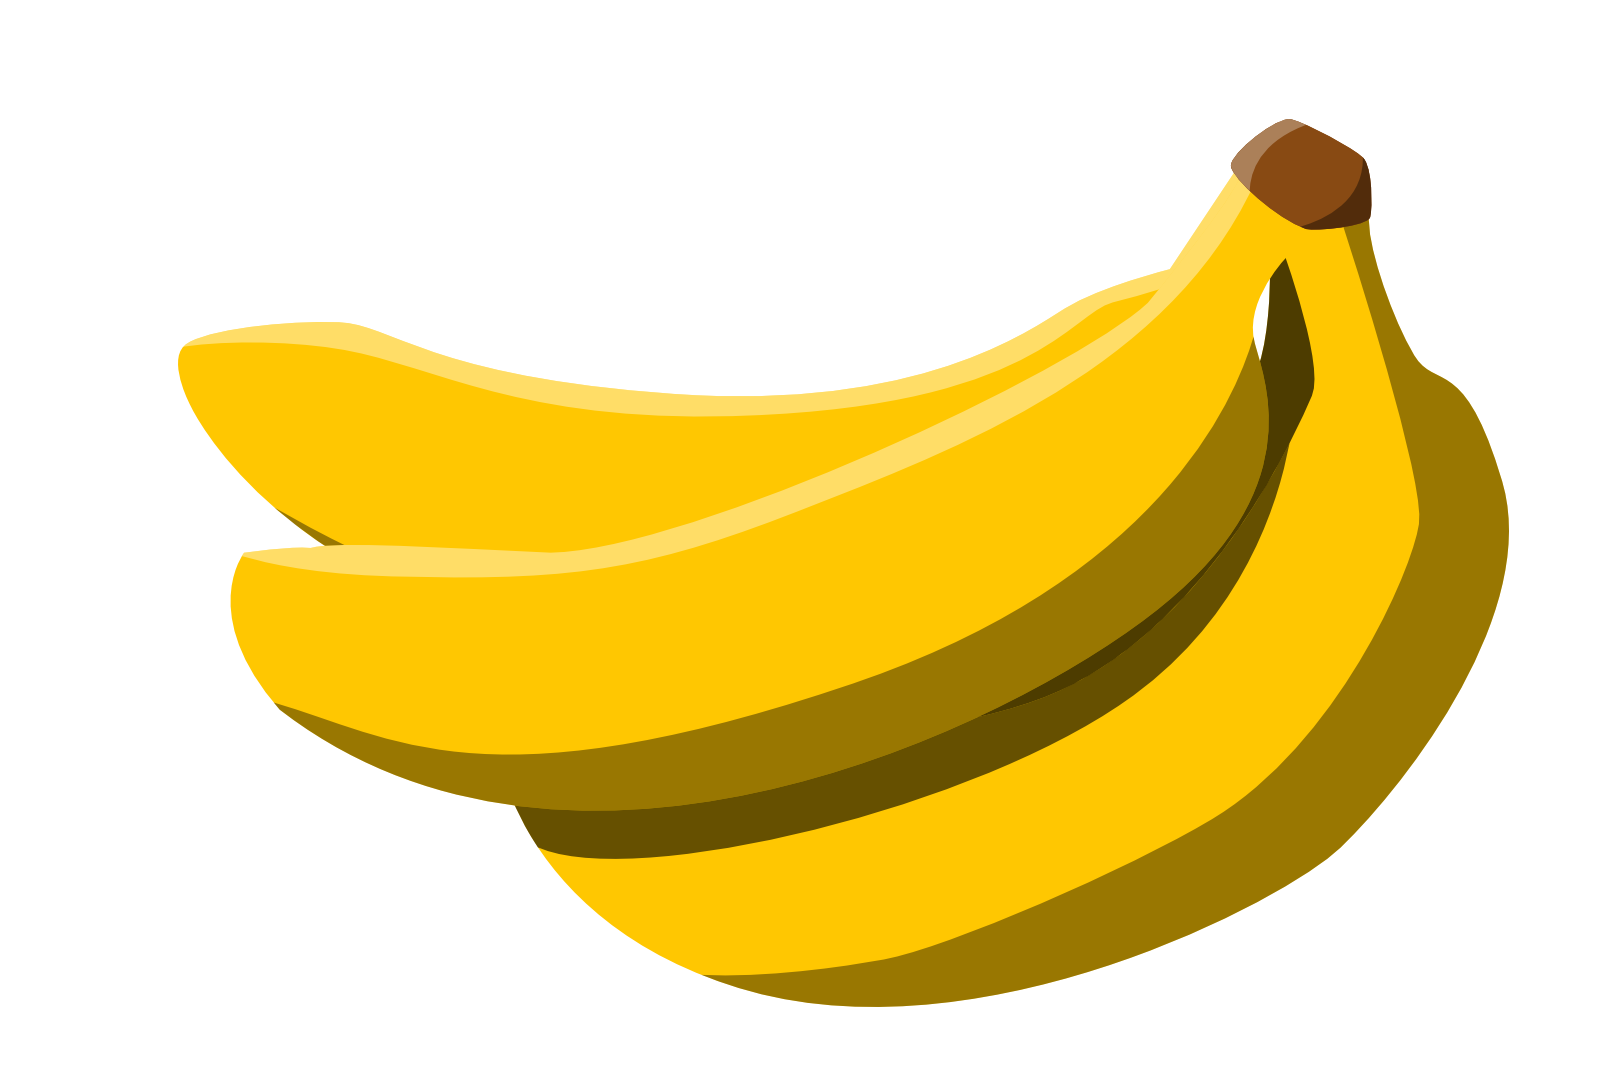 Banana PNG Image in High Definition - Banana Png